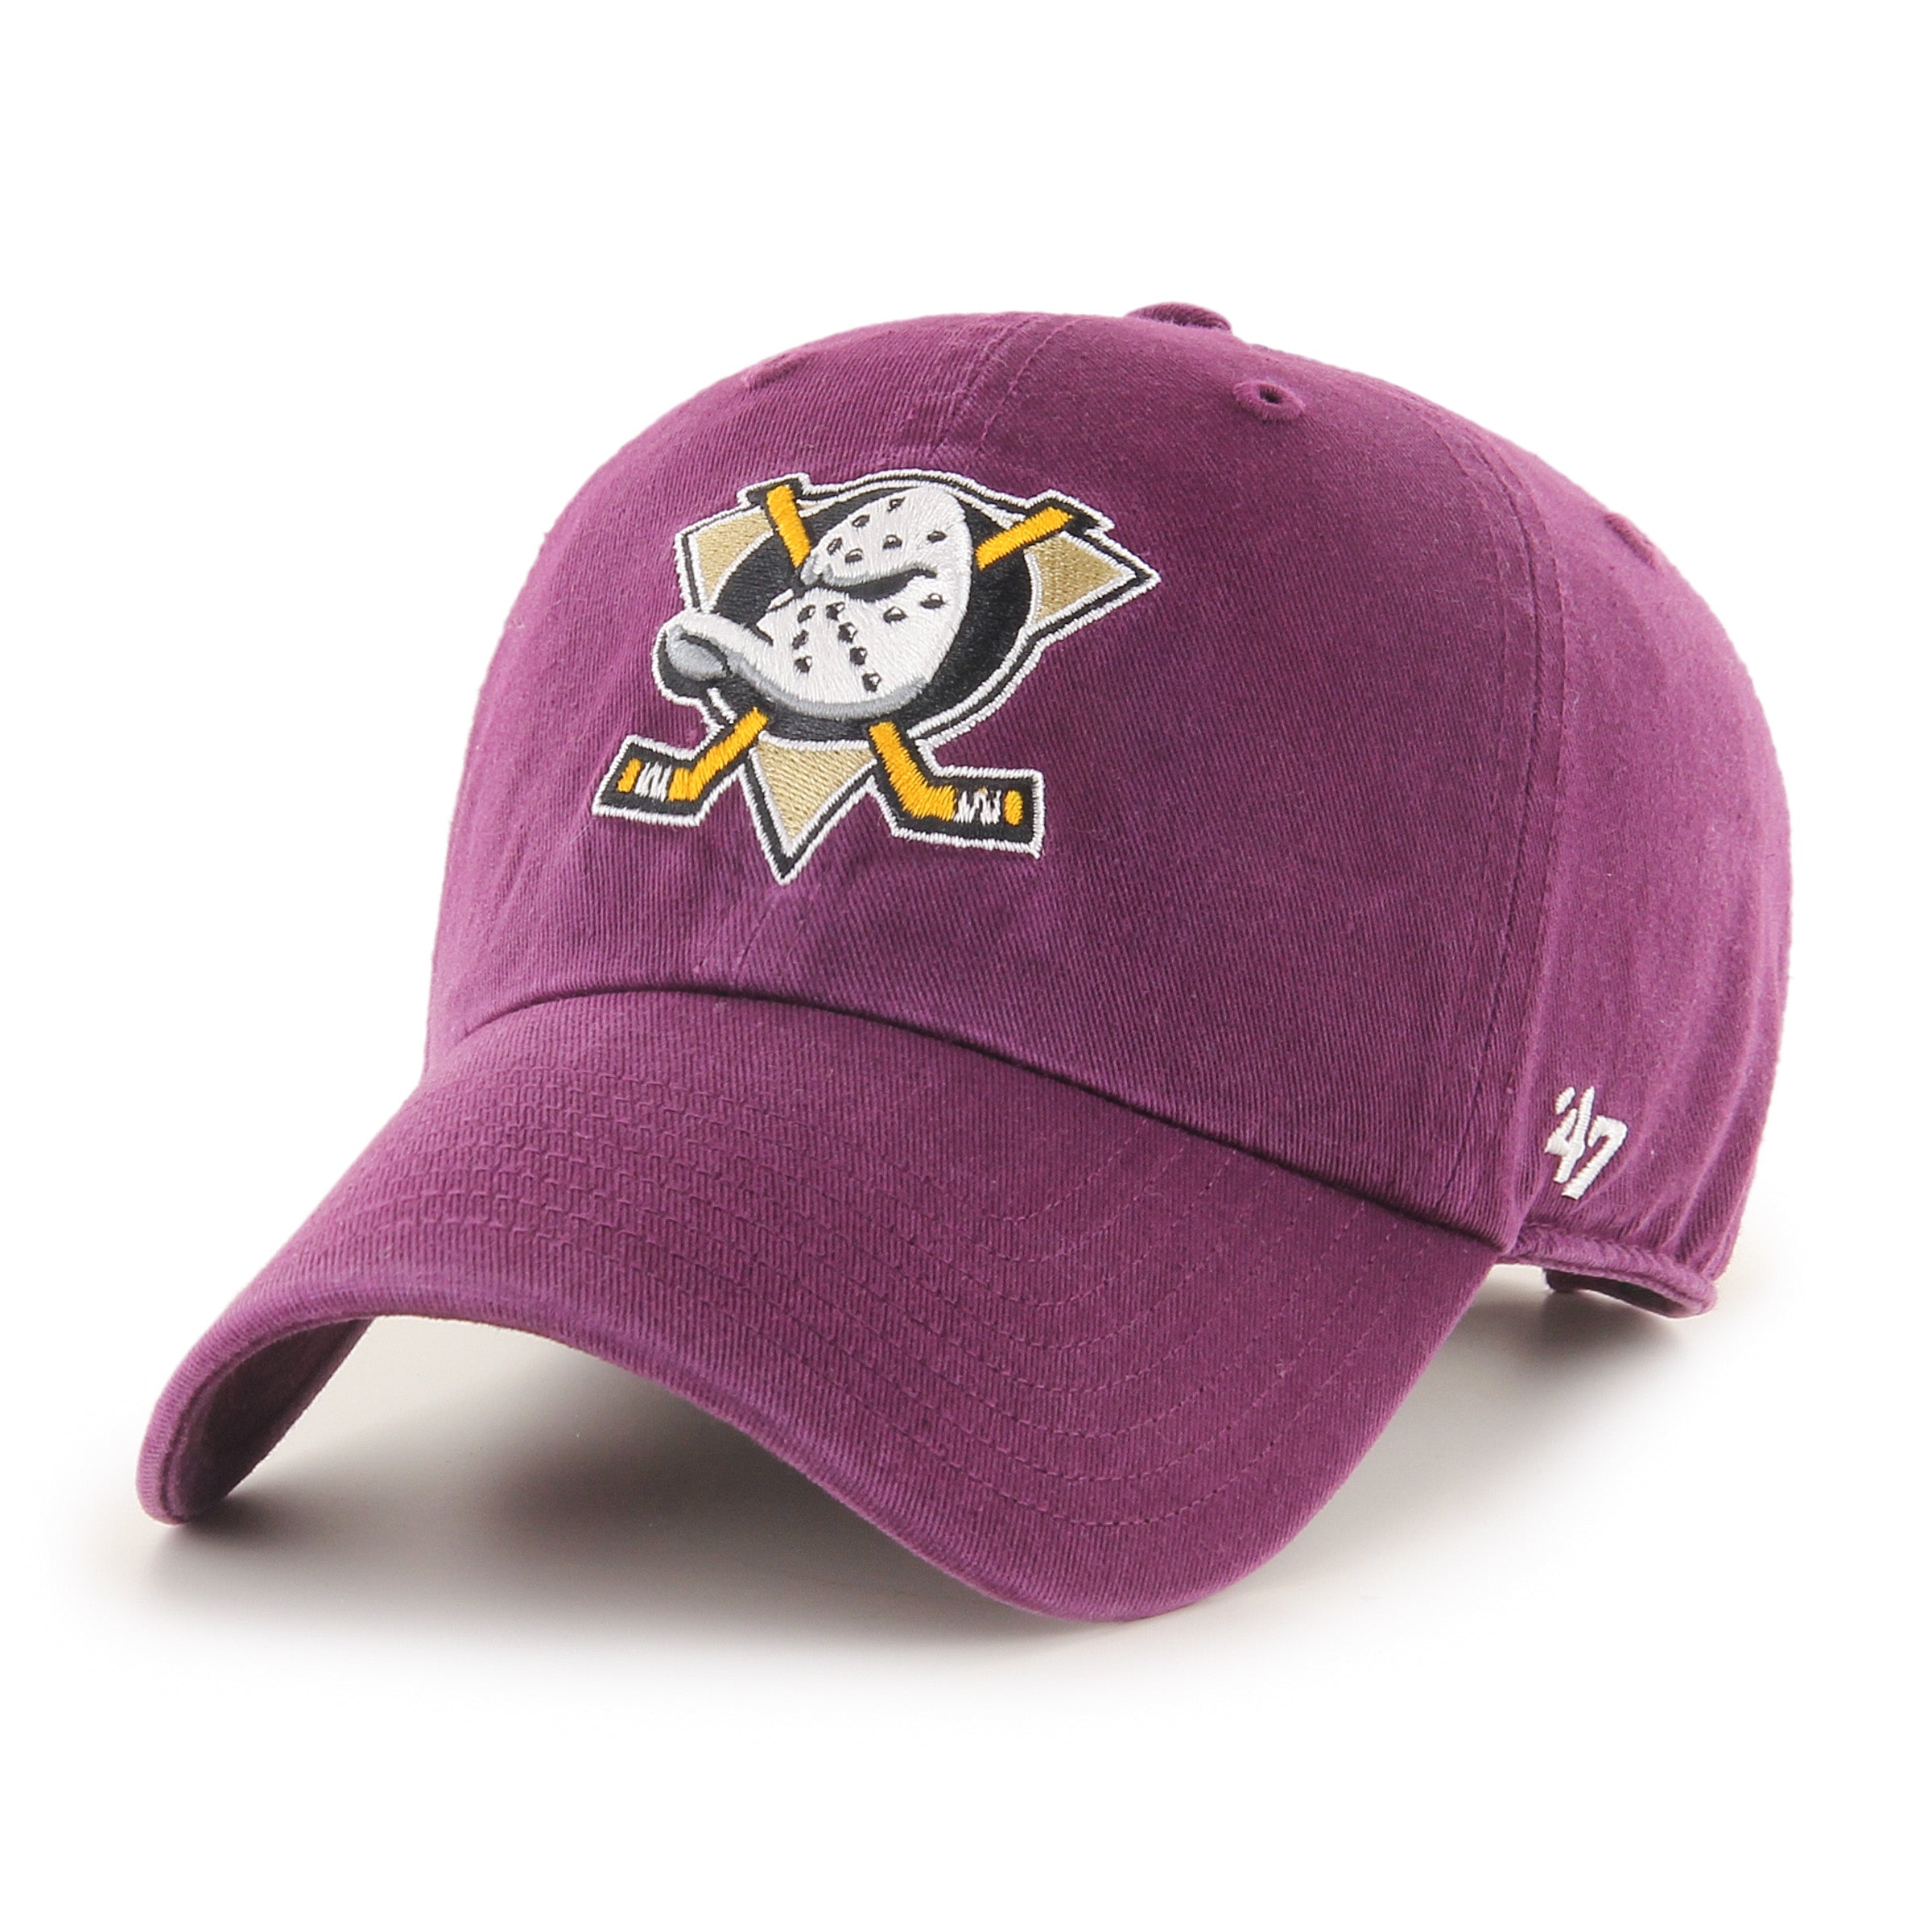 Anaheim Ducks NHL cap